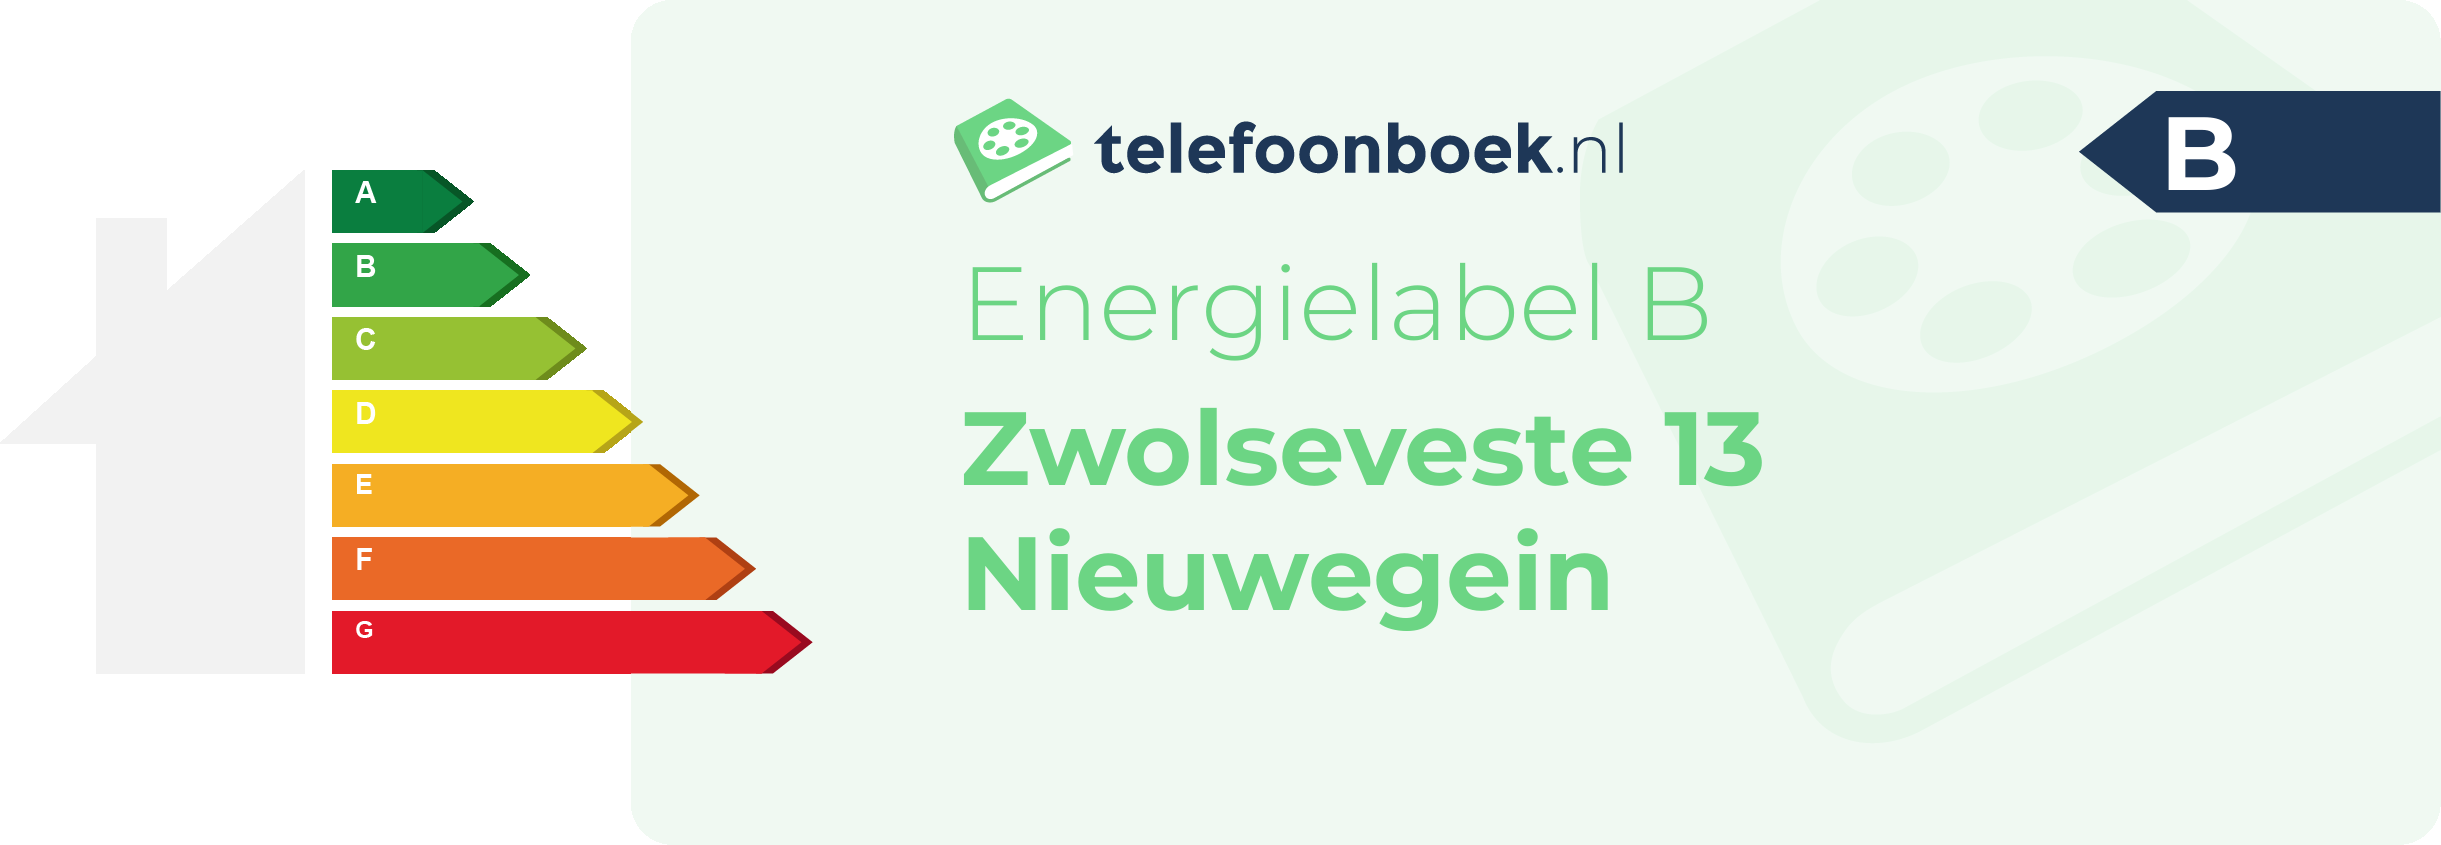 Energielabel Zwolseveste 13 Nieuwegein